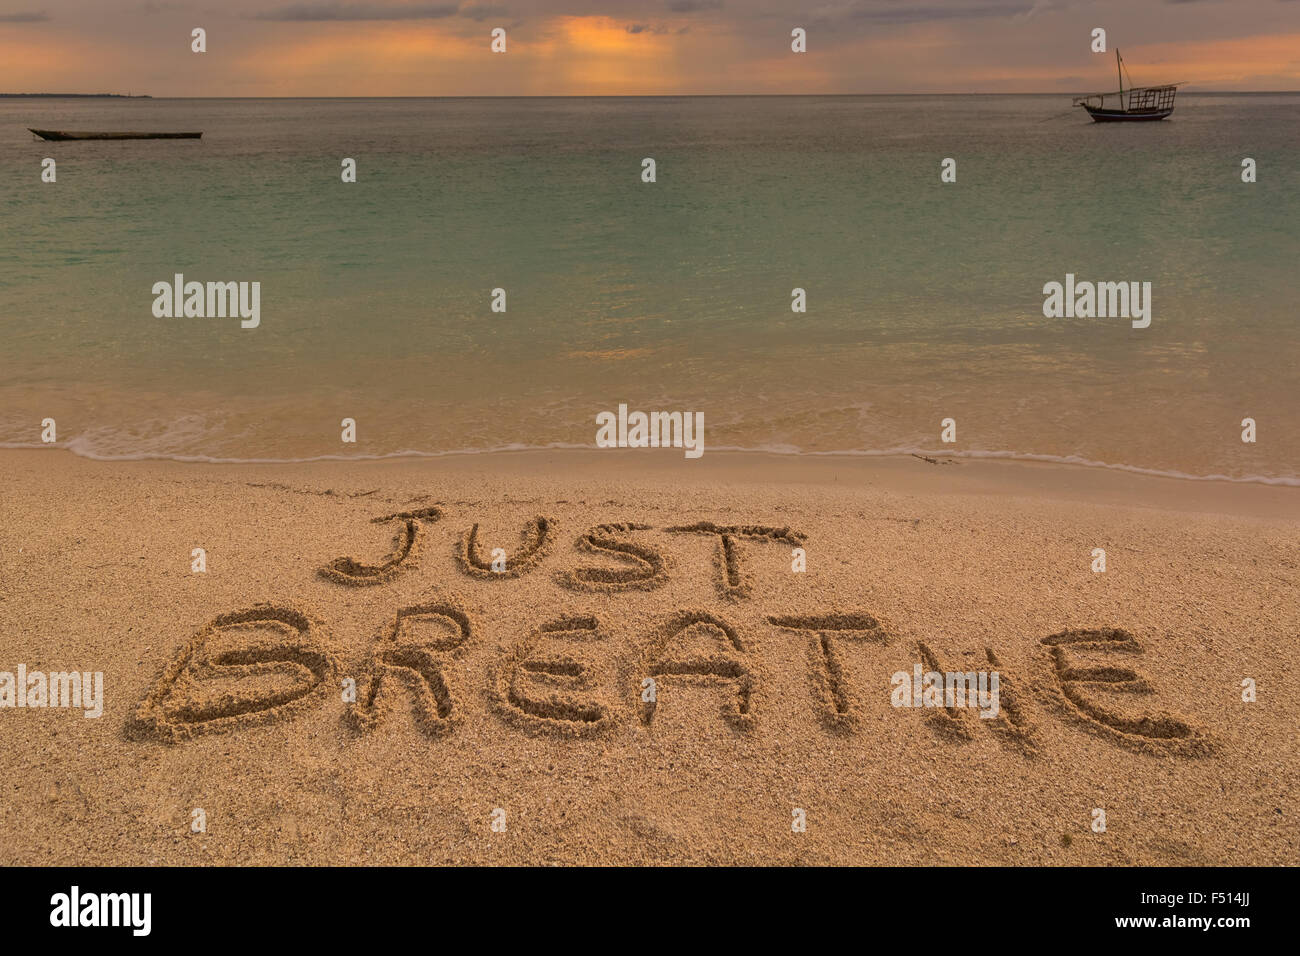 Auf dem Bild einen Strand bei Sonnenuntergang mit den Worten auf dem Sand "einfach atmen Sie". Stockfoto